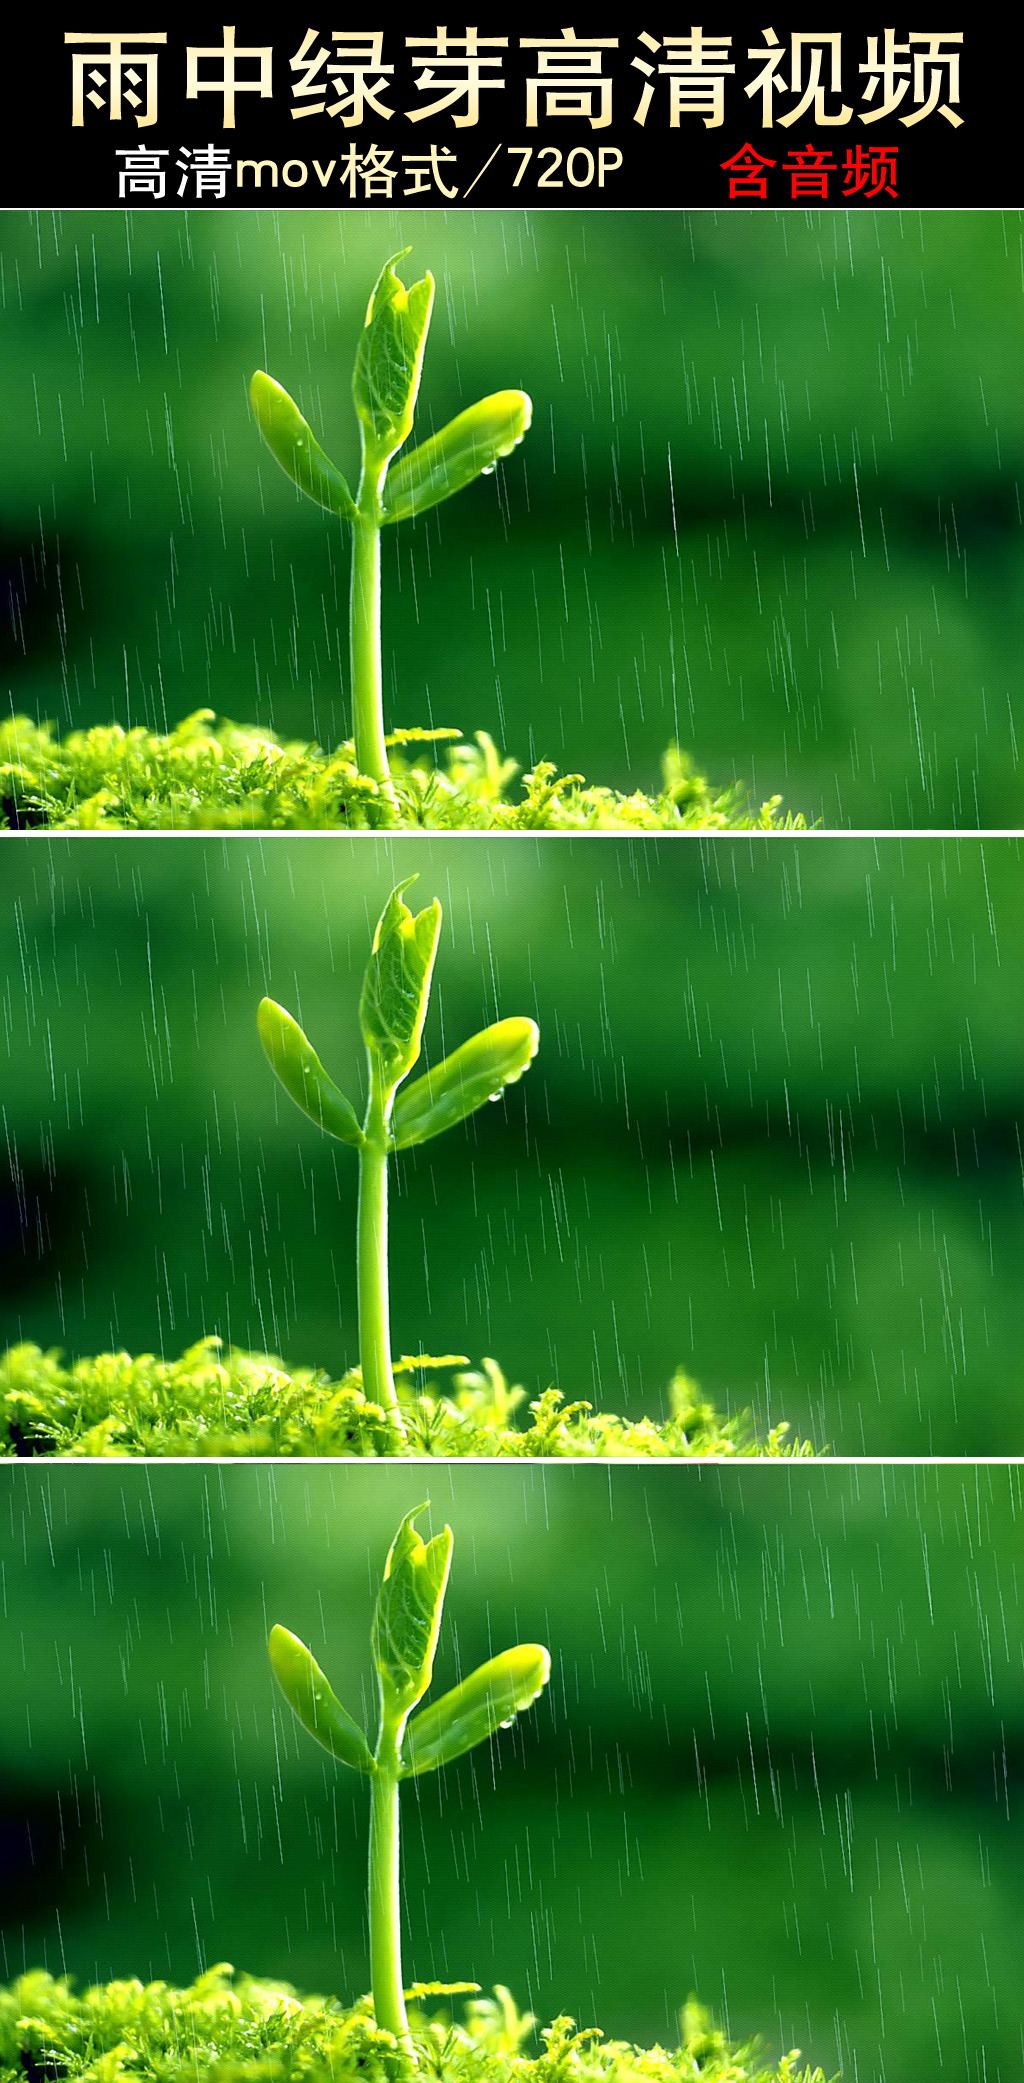 视频 下雨视频素材 春雨视频 春雨素材 绿芽素材 嫩芽素材 雨中嫩芽